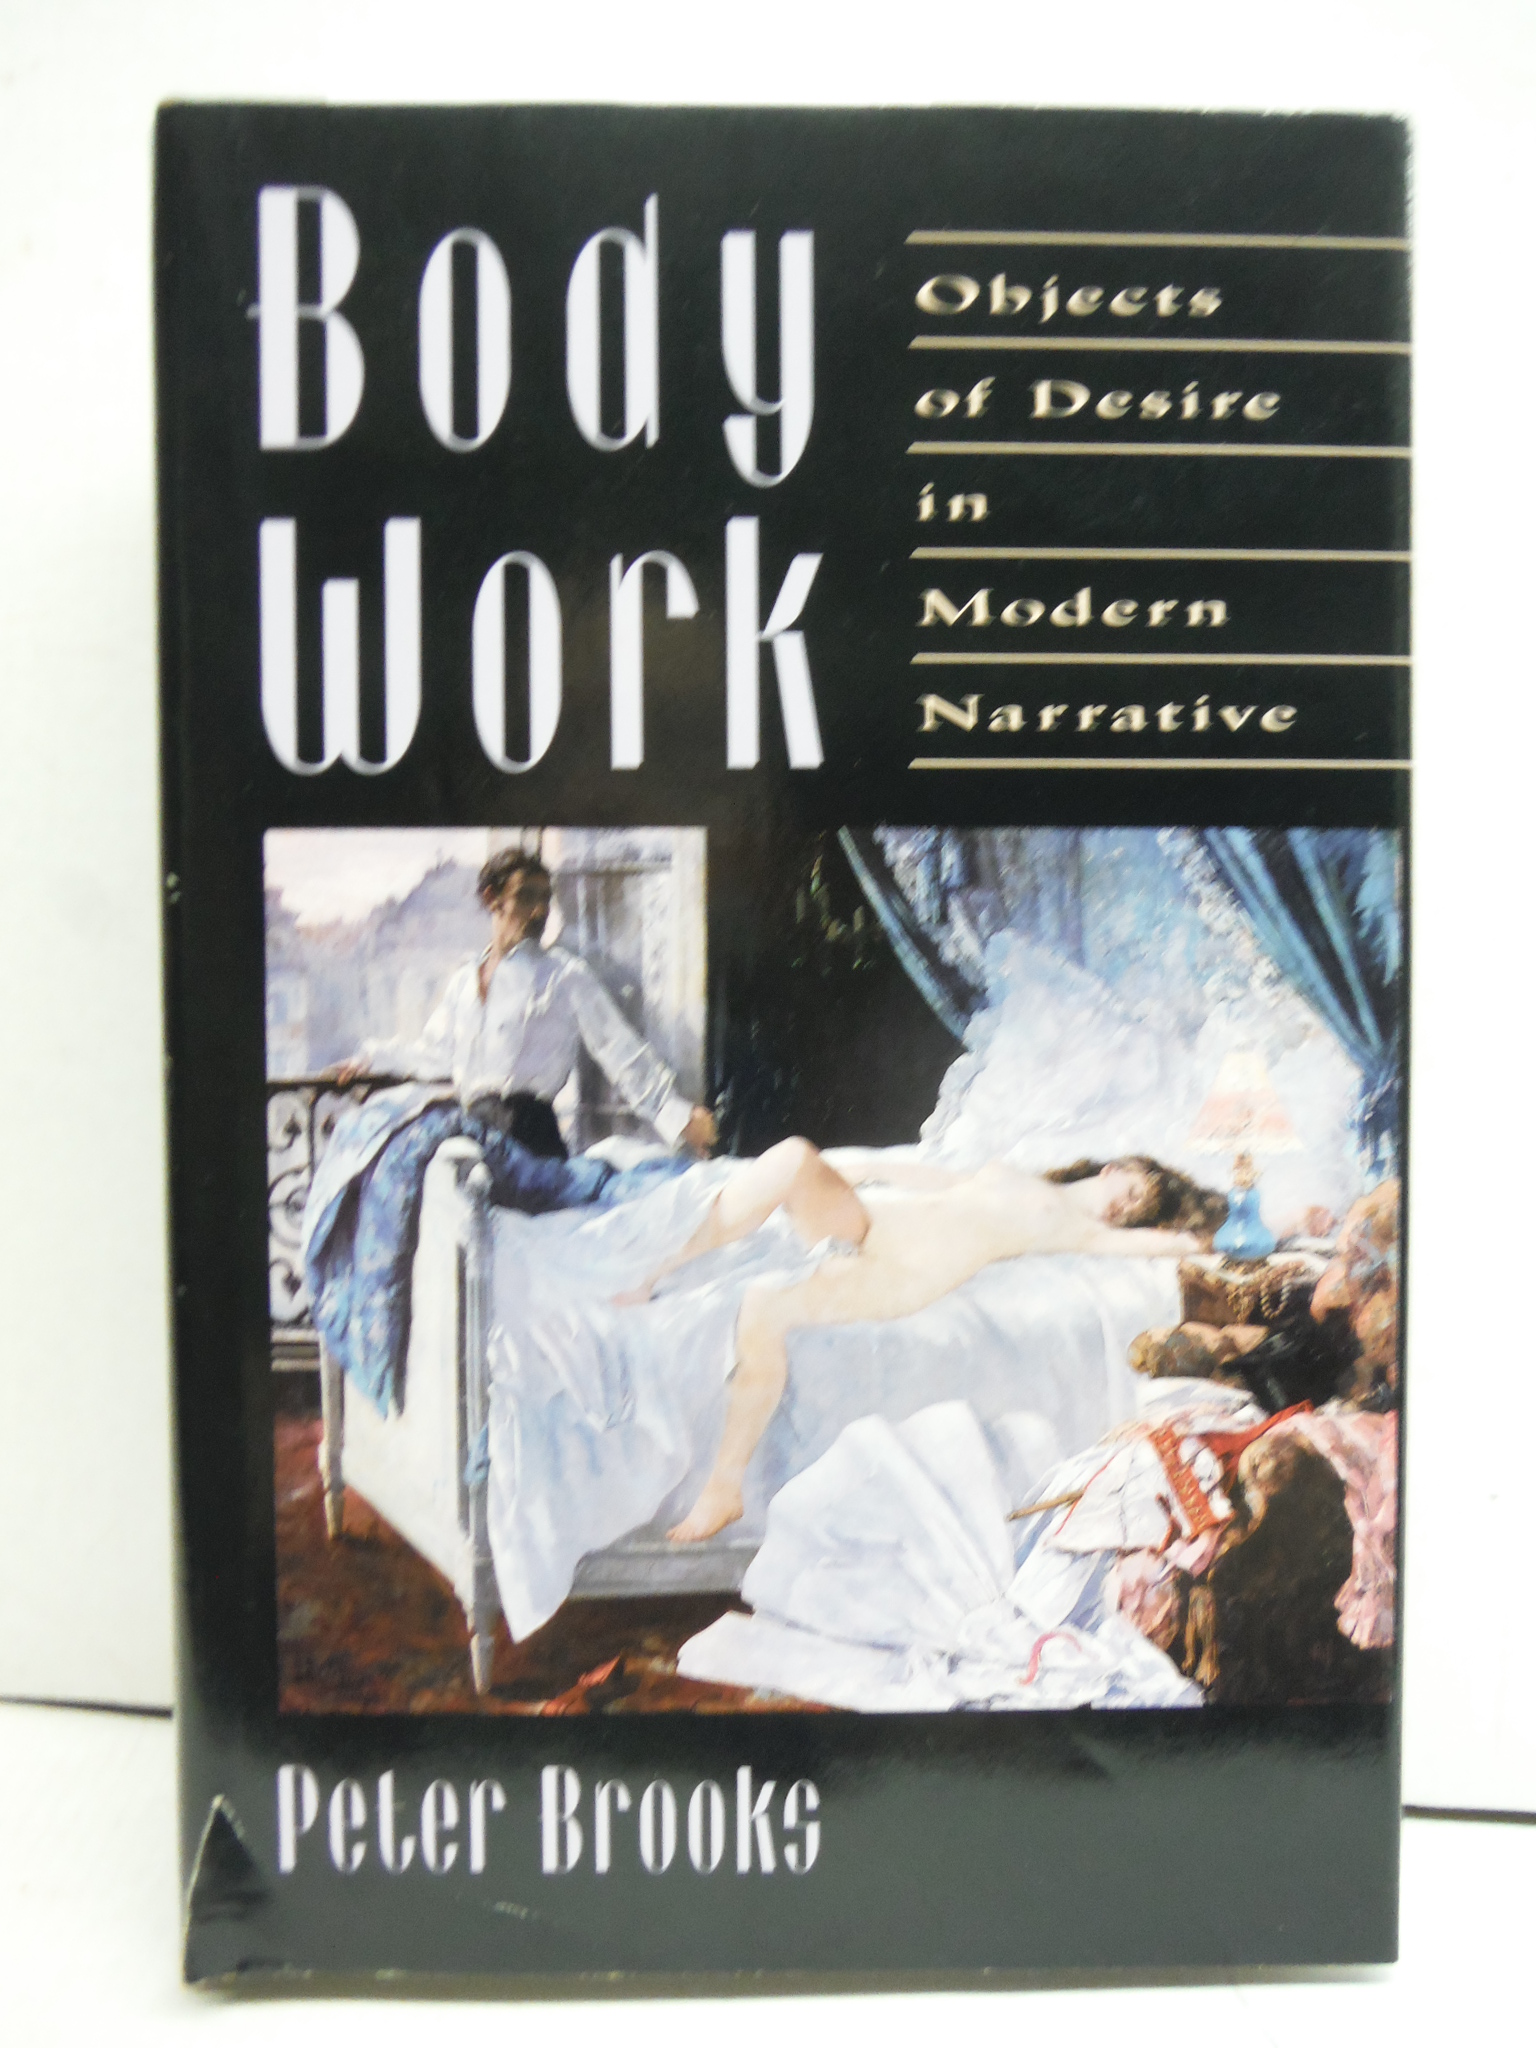 Body Work: Objects of Desire in Modern Narrative